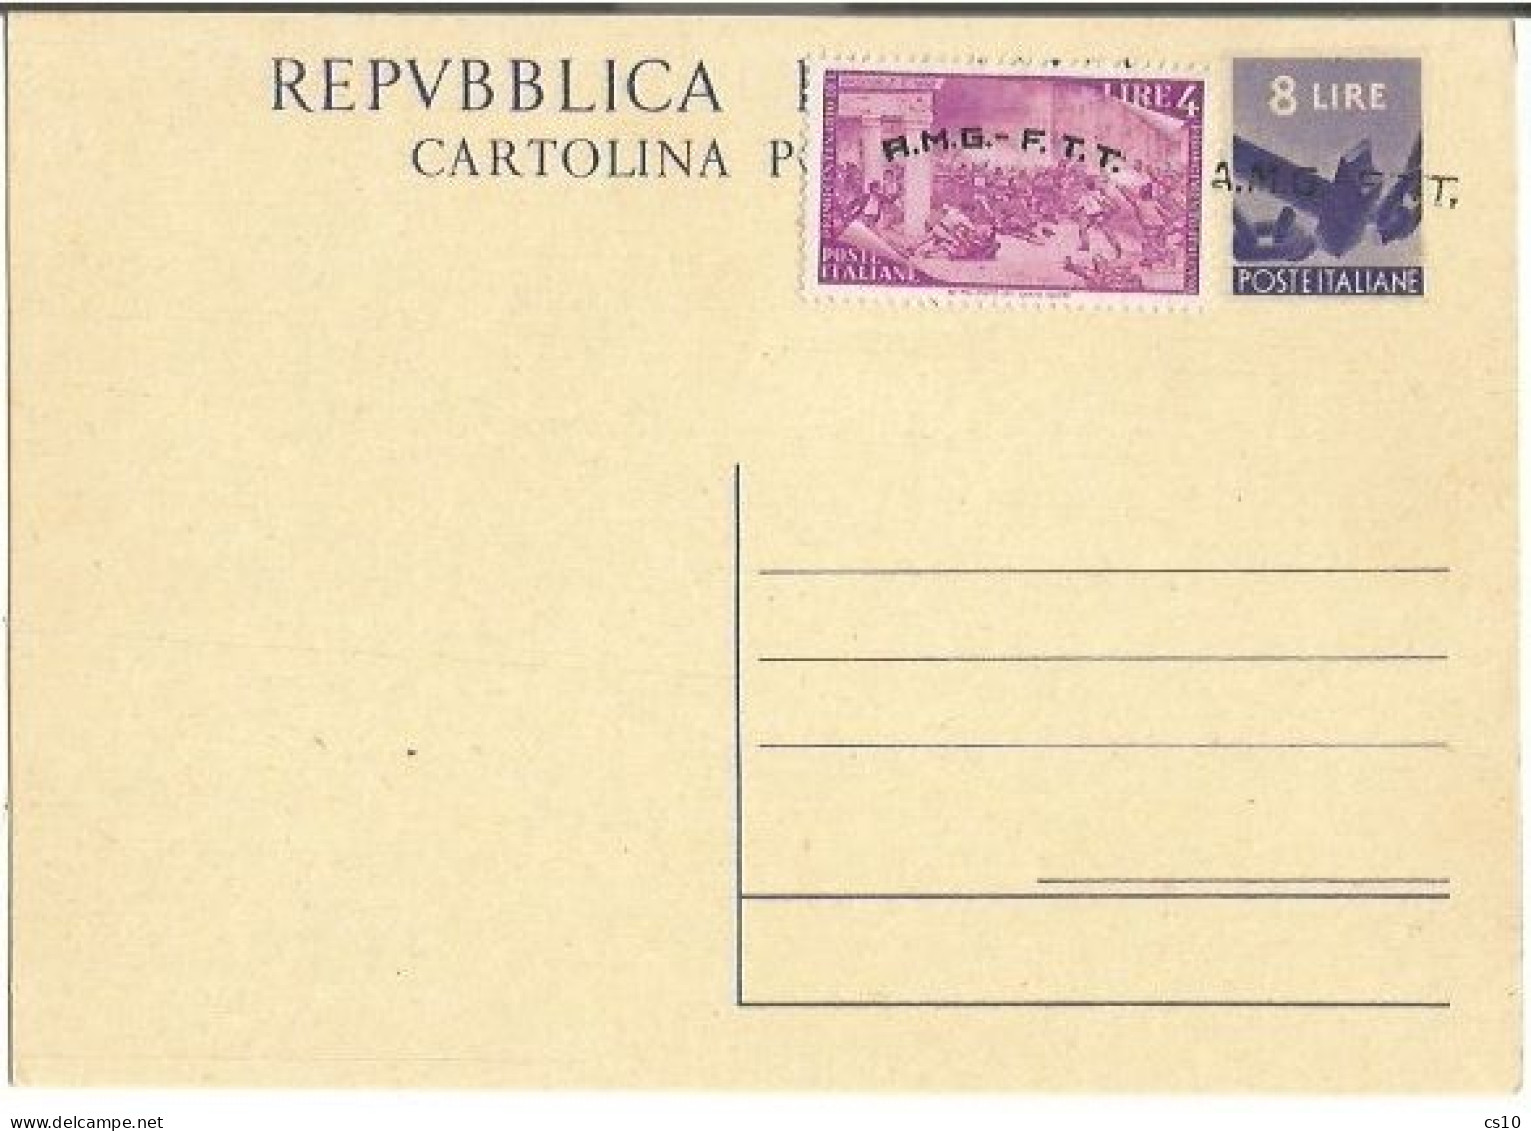 Trieste "A" AMG-FTT 1947 Cart.Postale Democratica L.8 #C2 Soprast.A Con Risorgimento L.4 Nuova NON VIAGGIATA - Marcophilia